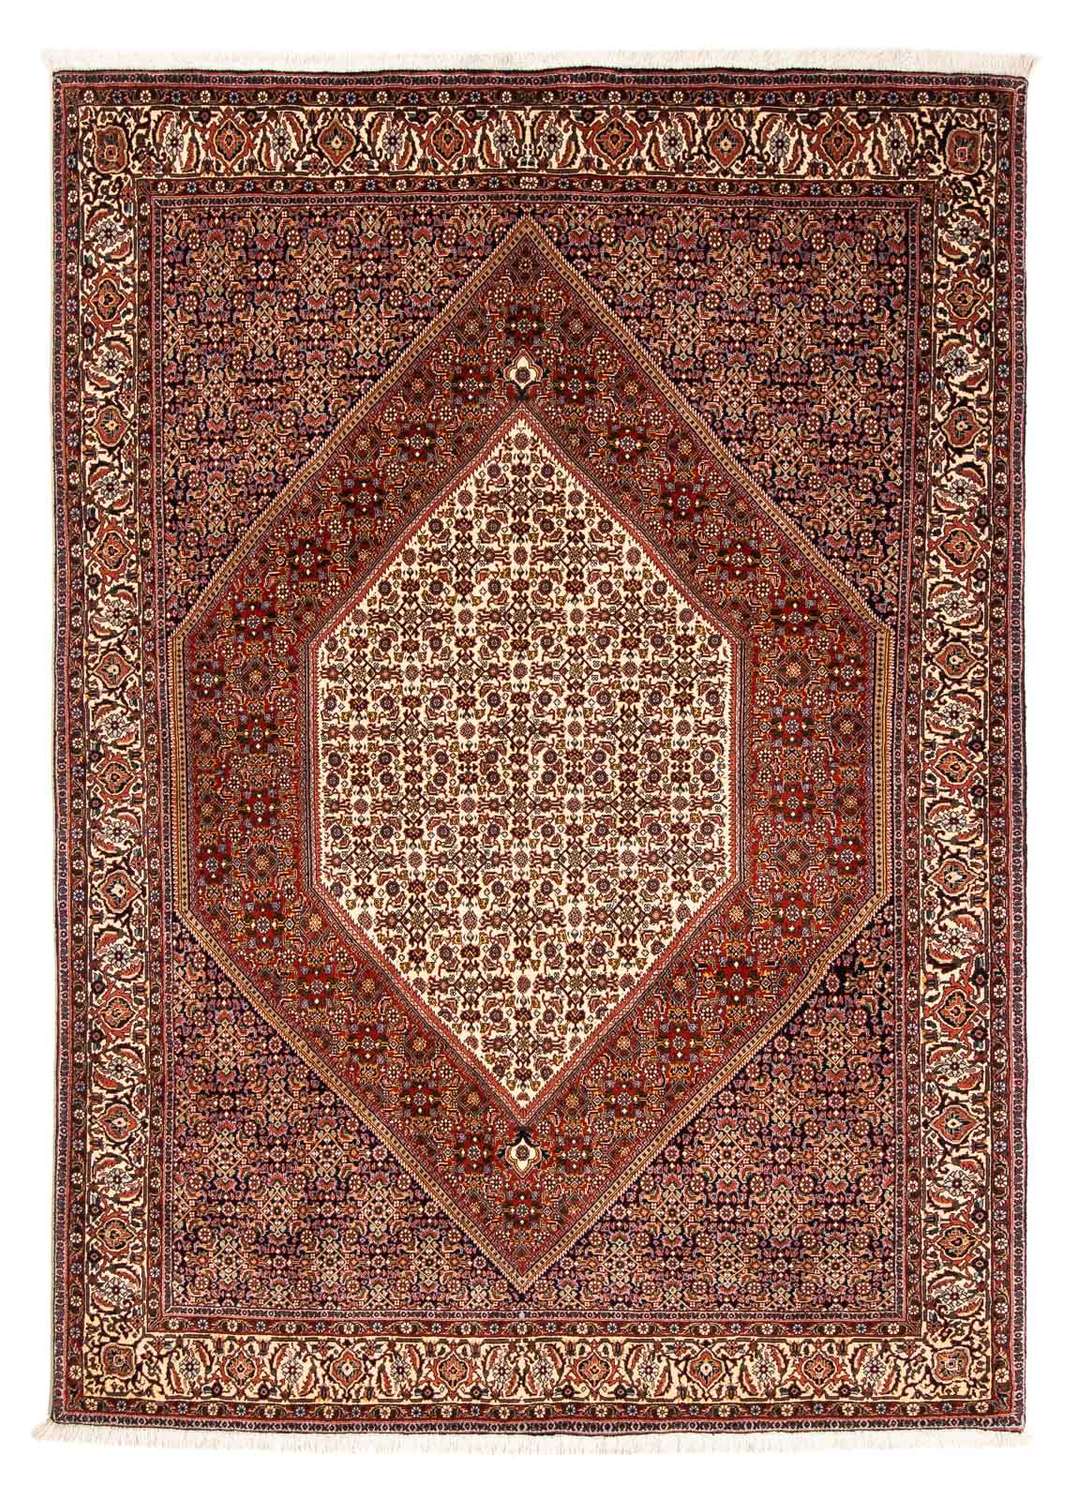 Tapis persan - Bidjar - 231 x 163 cm - multicolore